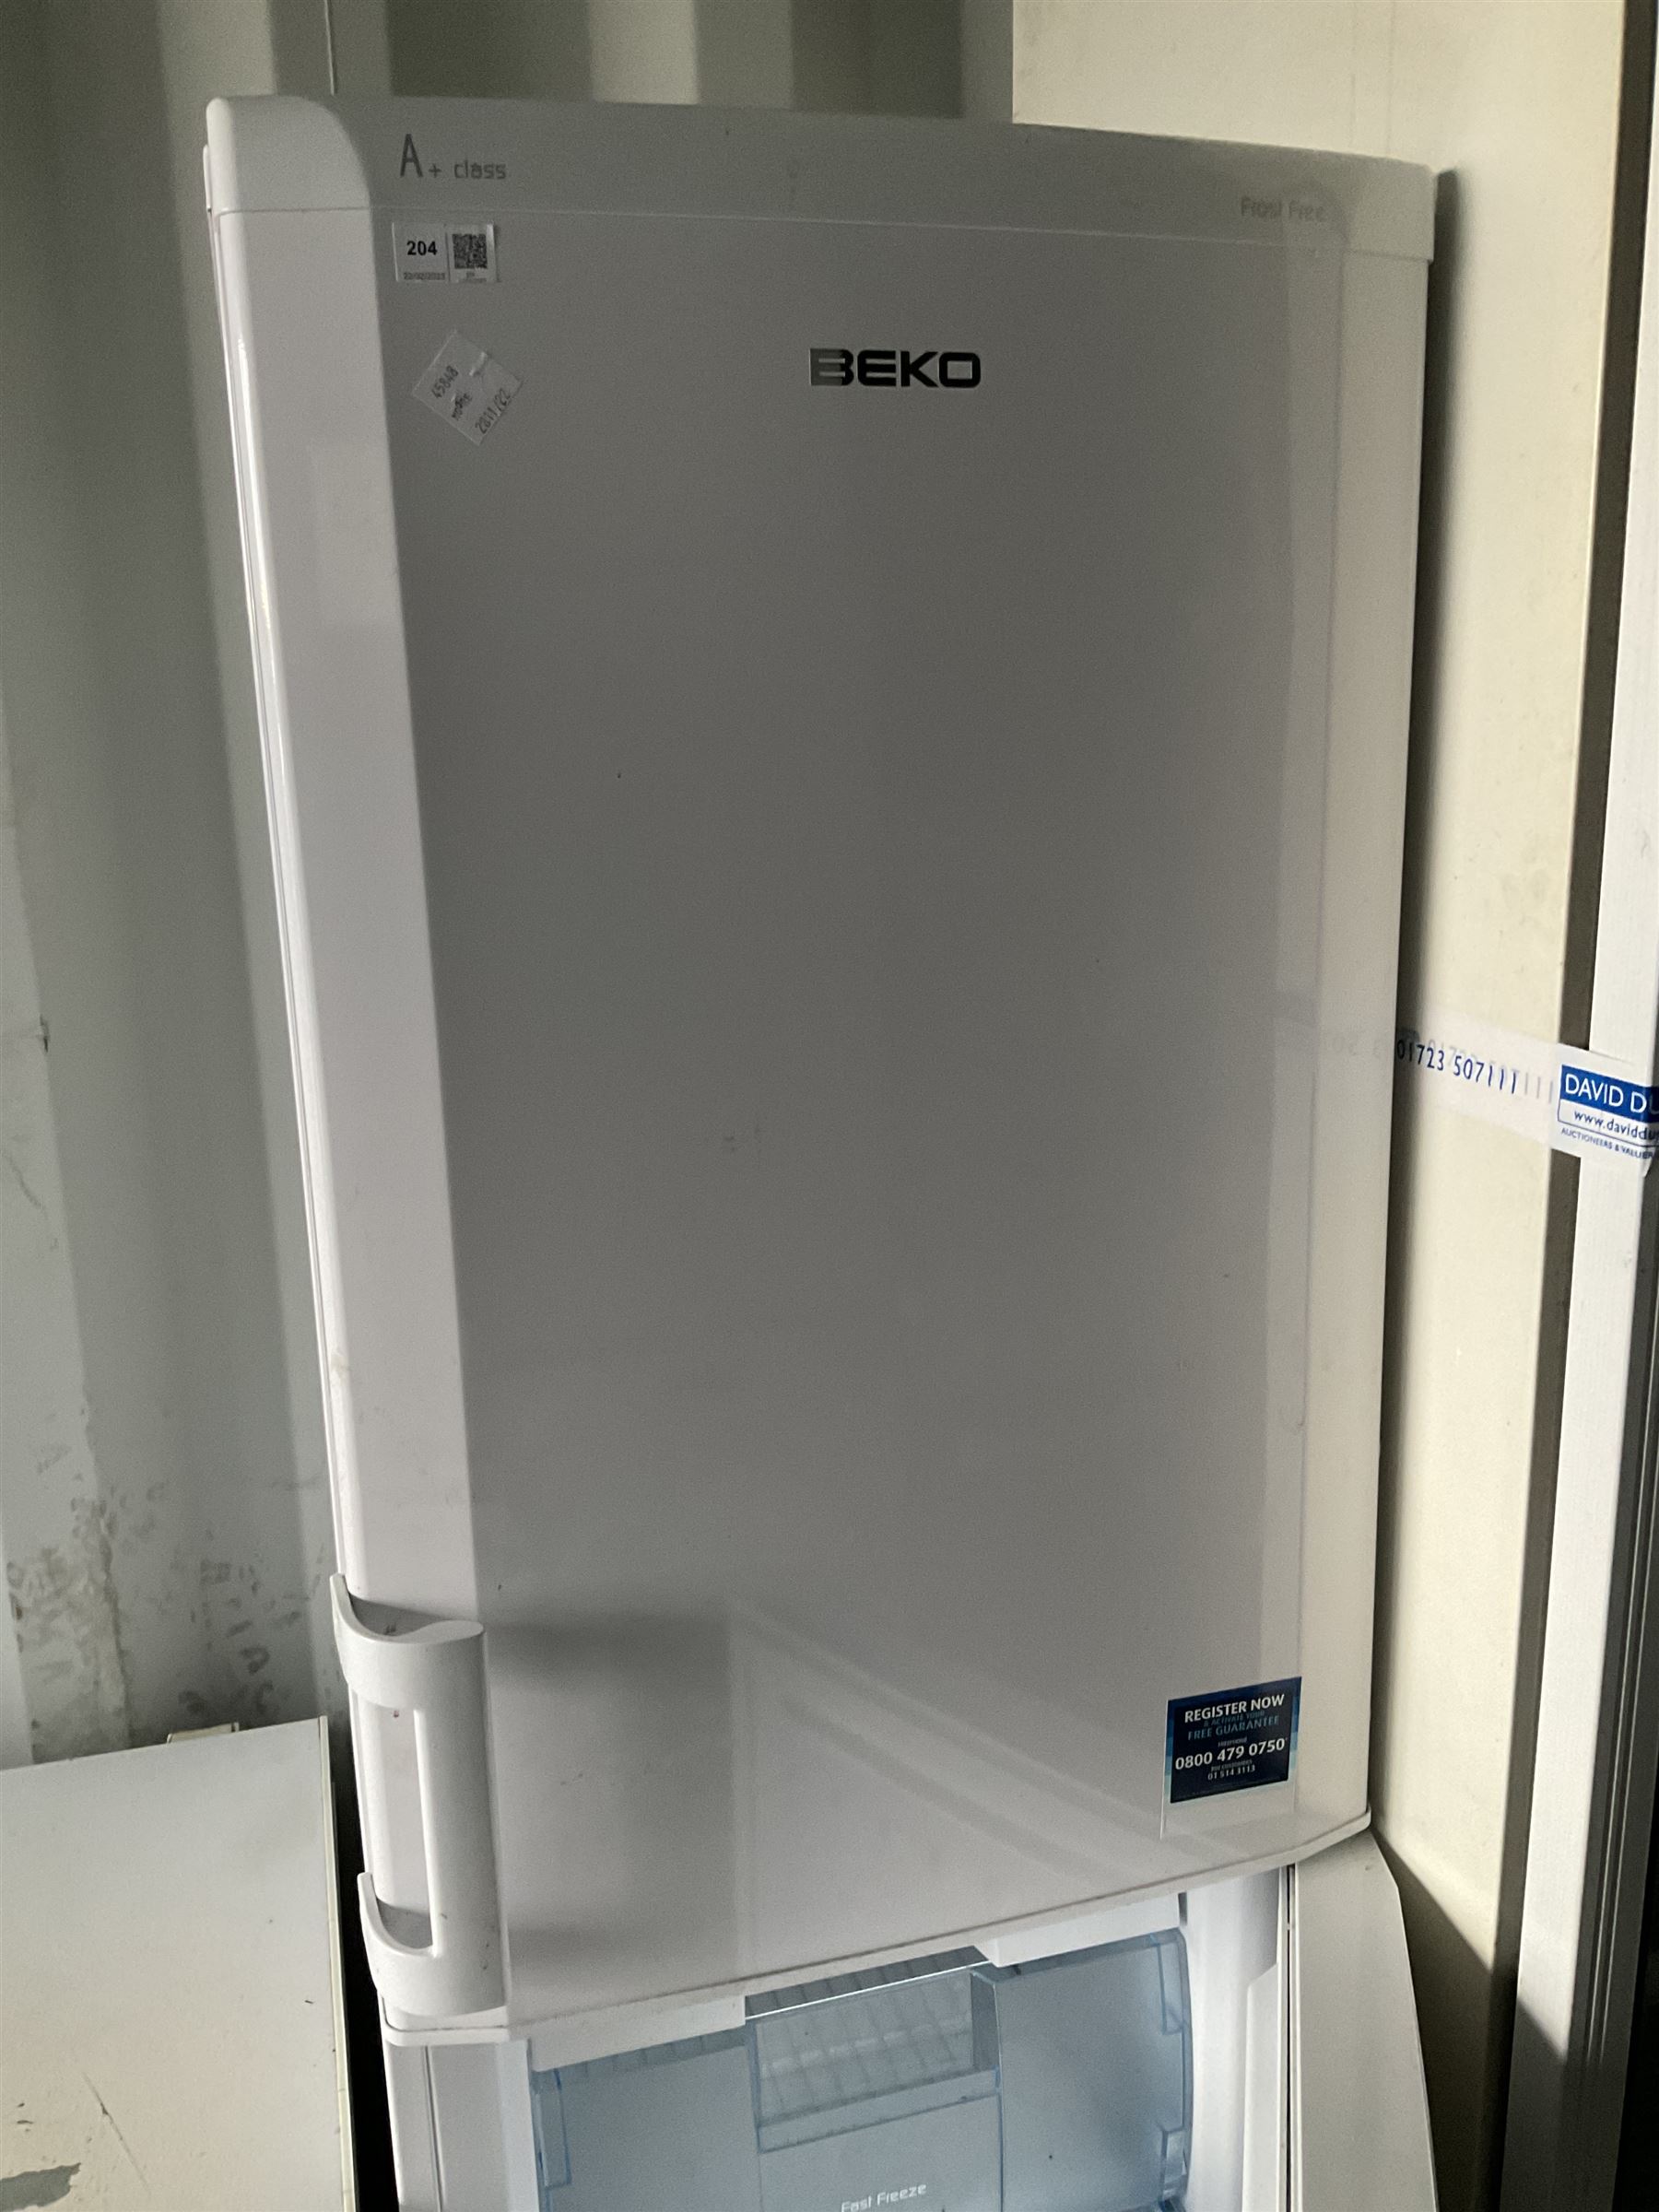 BEKO CXF5104W A+ Class Frost free fridge freezer - Image 2 of 4